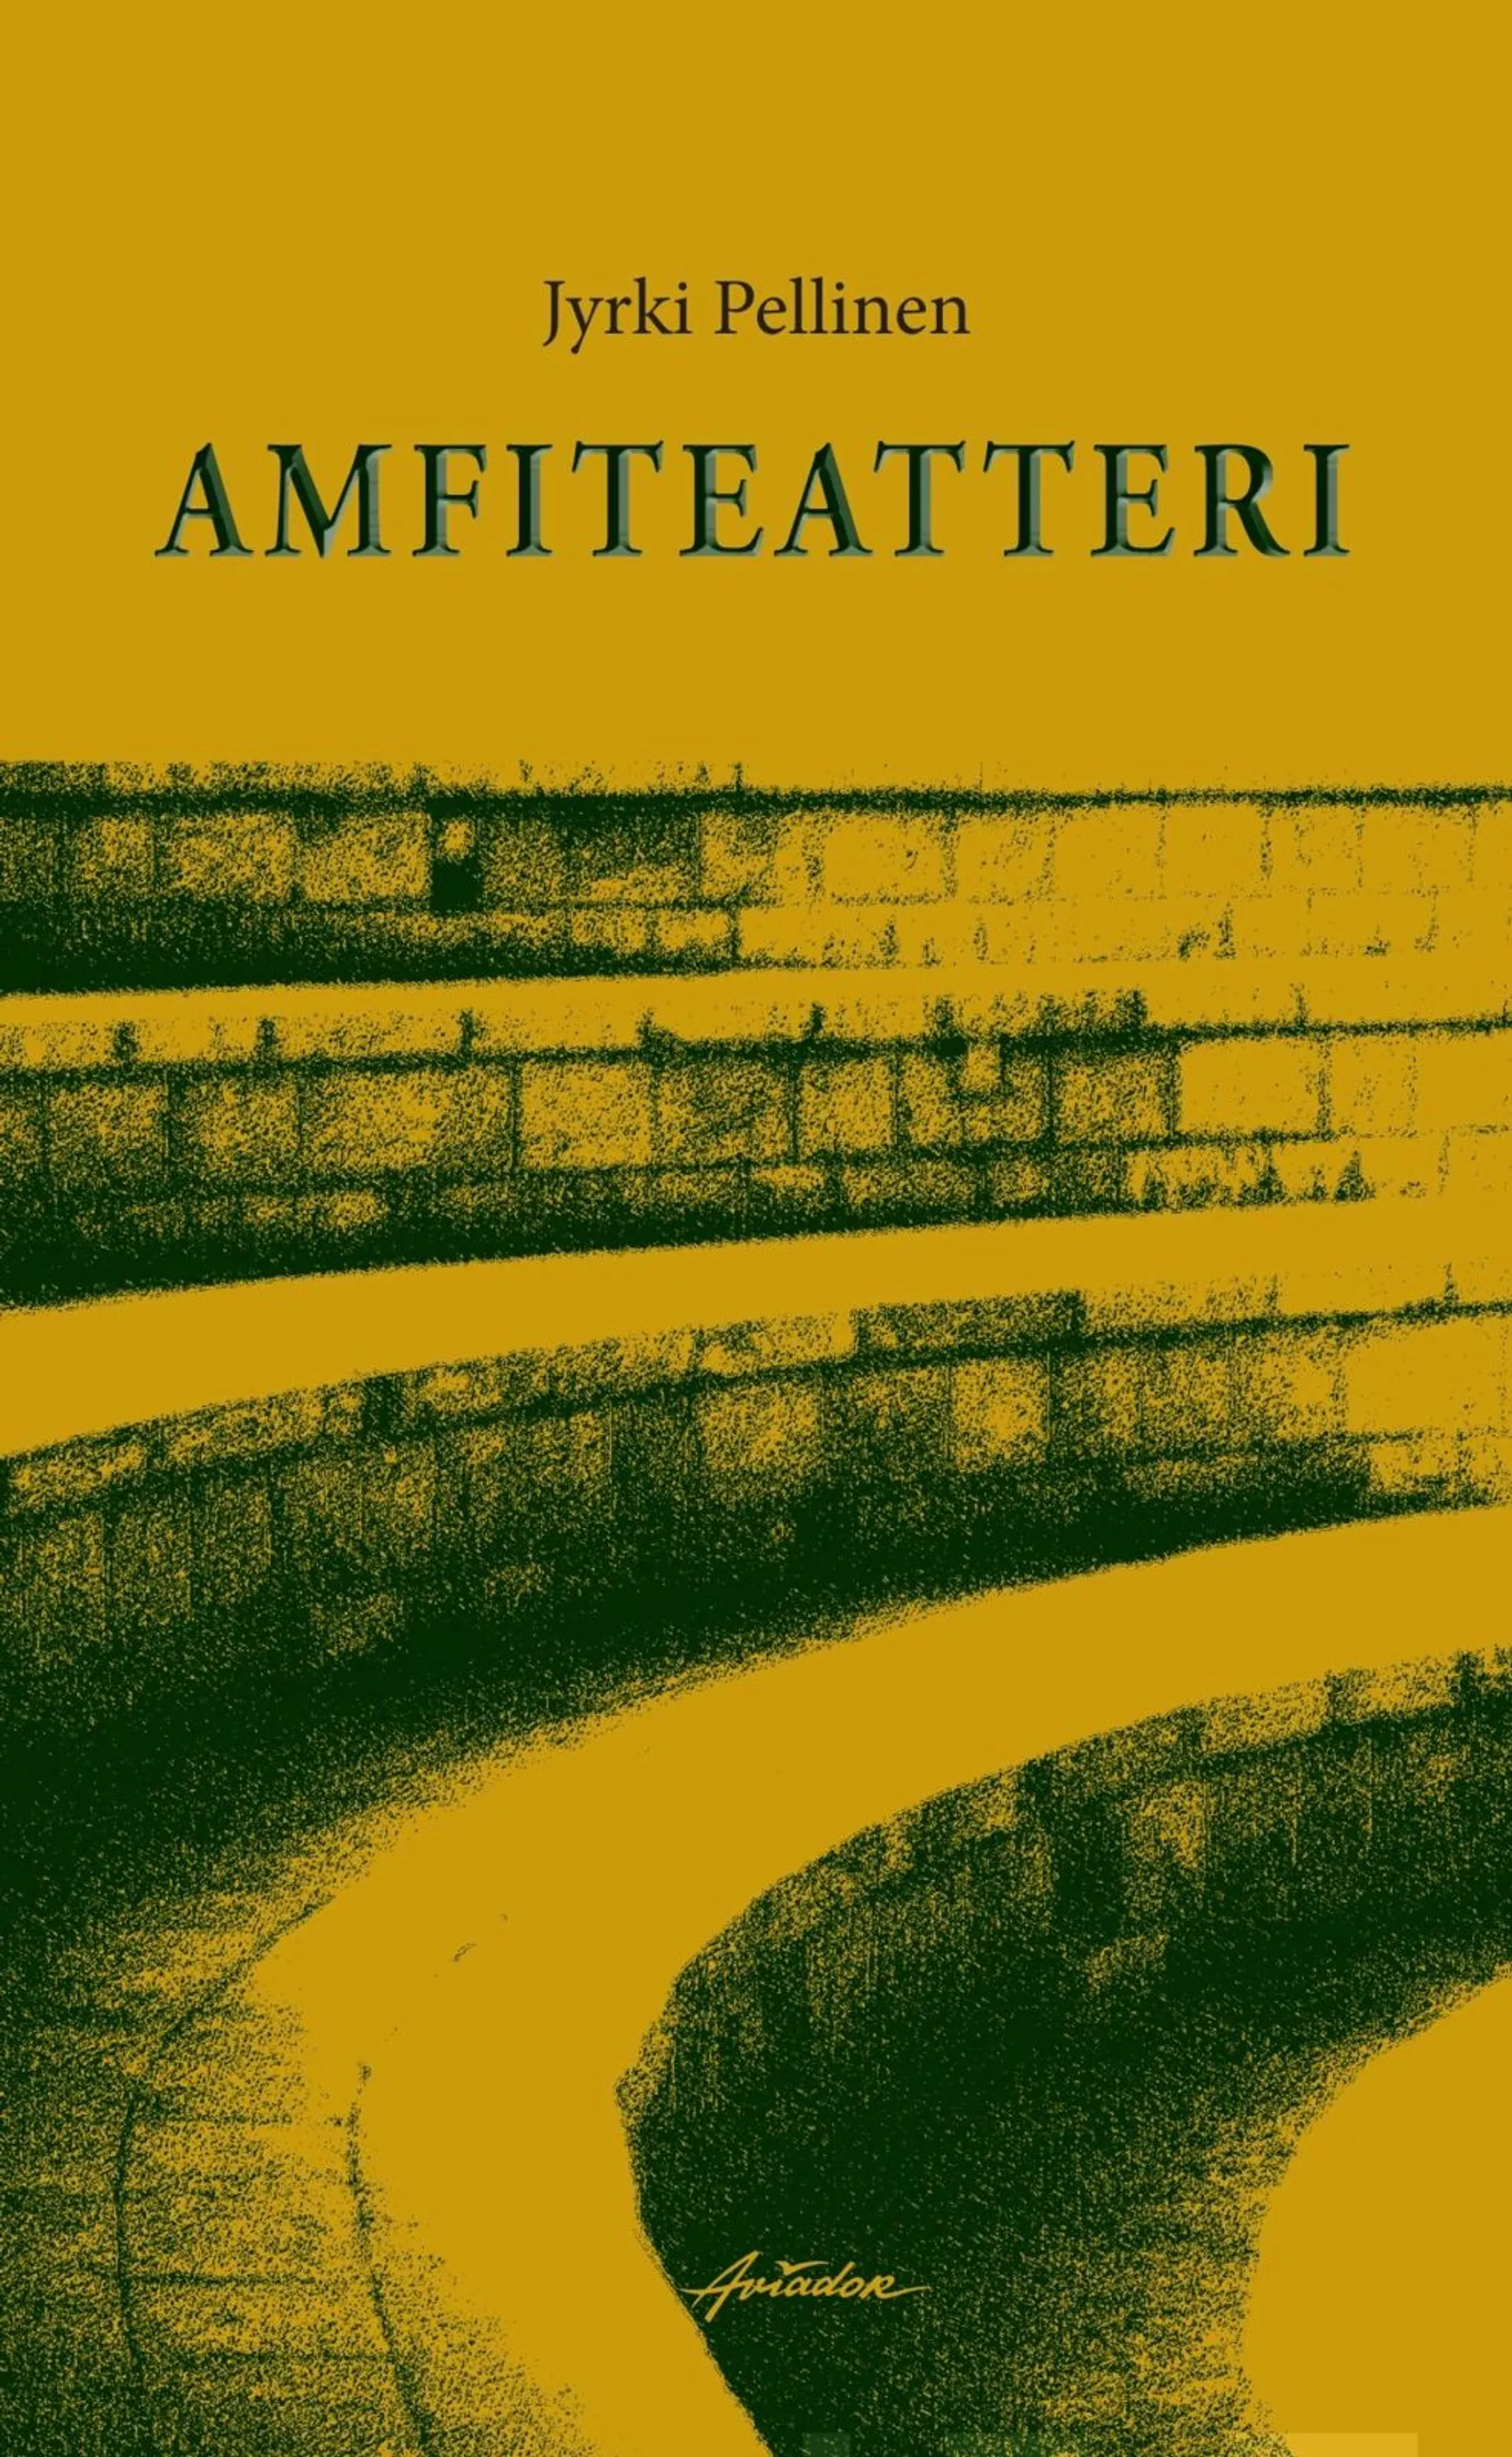 Pellinen, Amfiteatteri